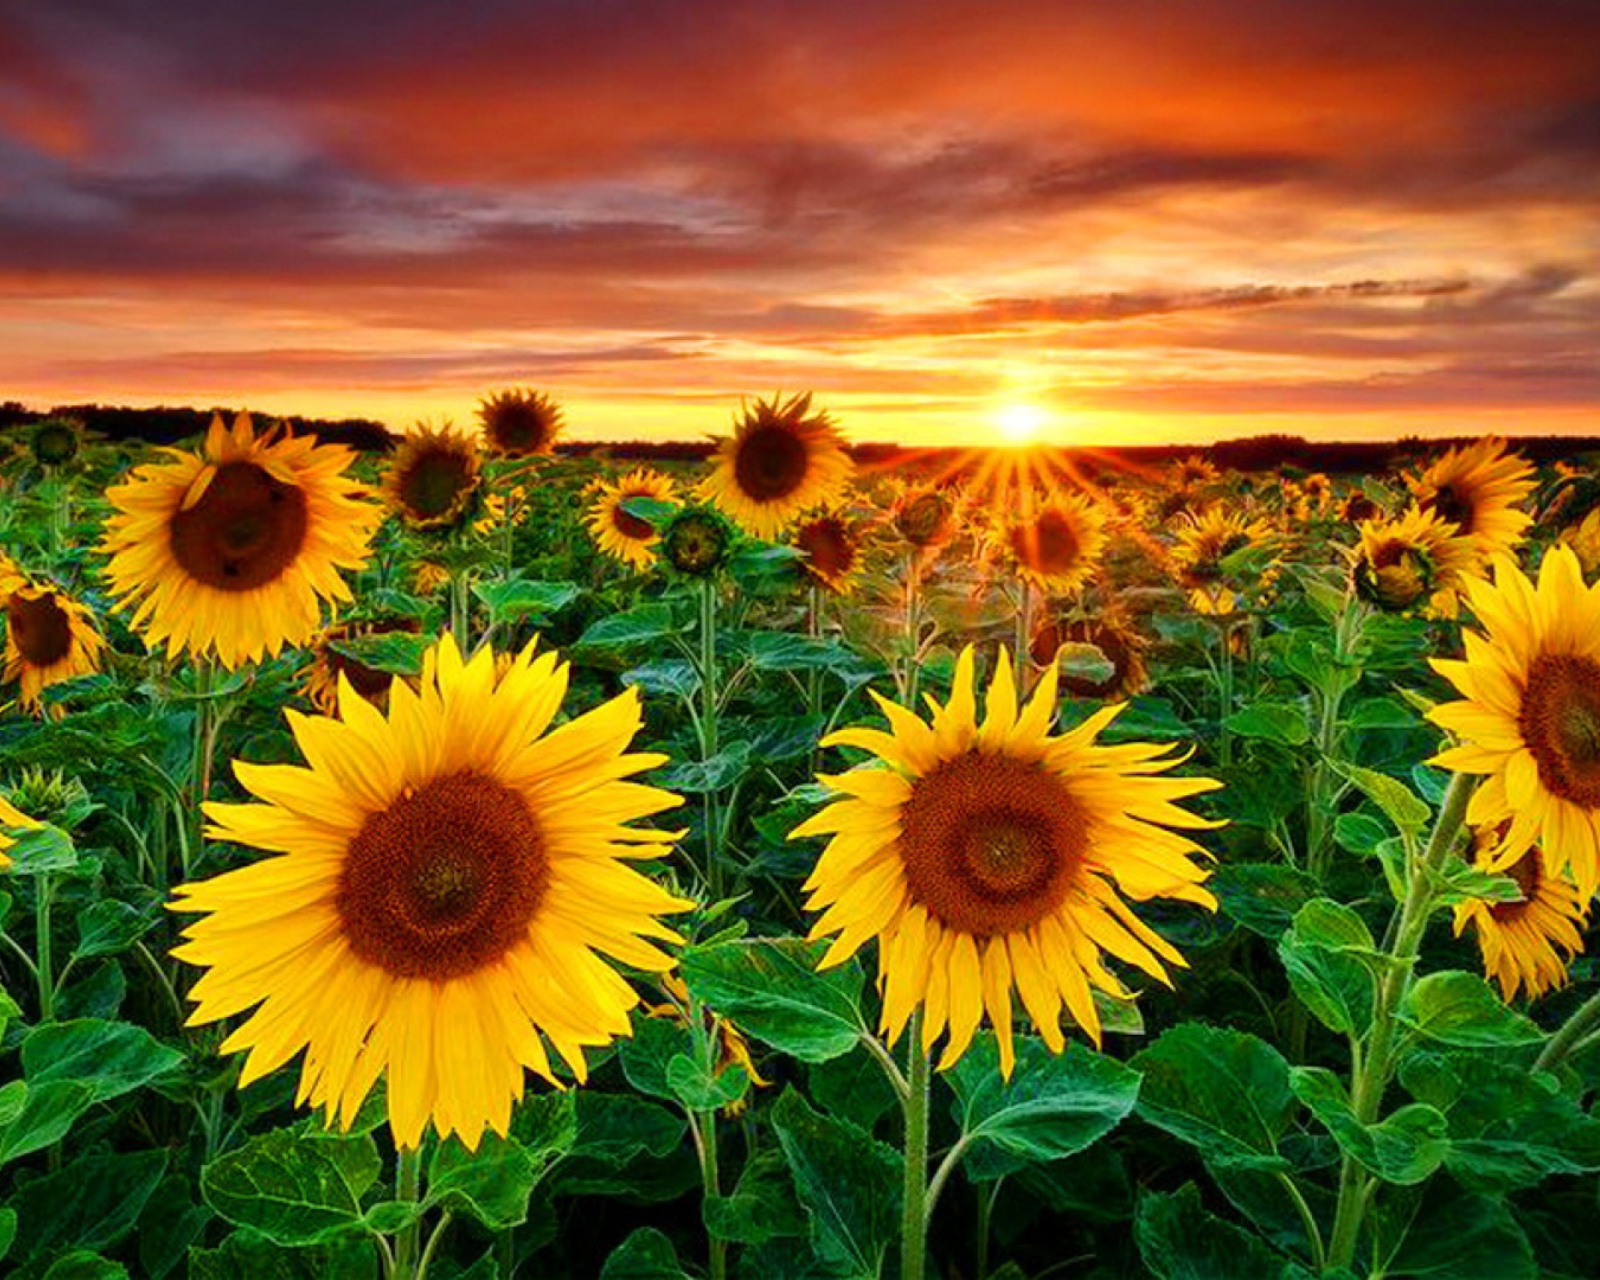 Das Beautiful Sunflower Field At Sunset Wallpaper 1600x1280